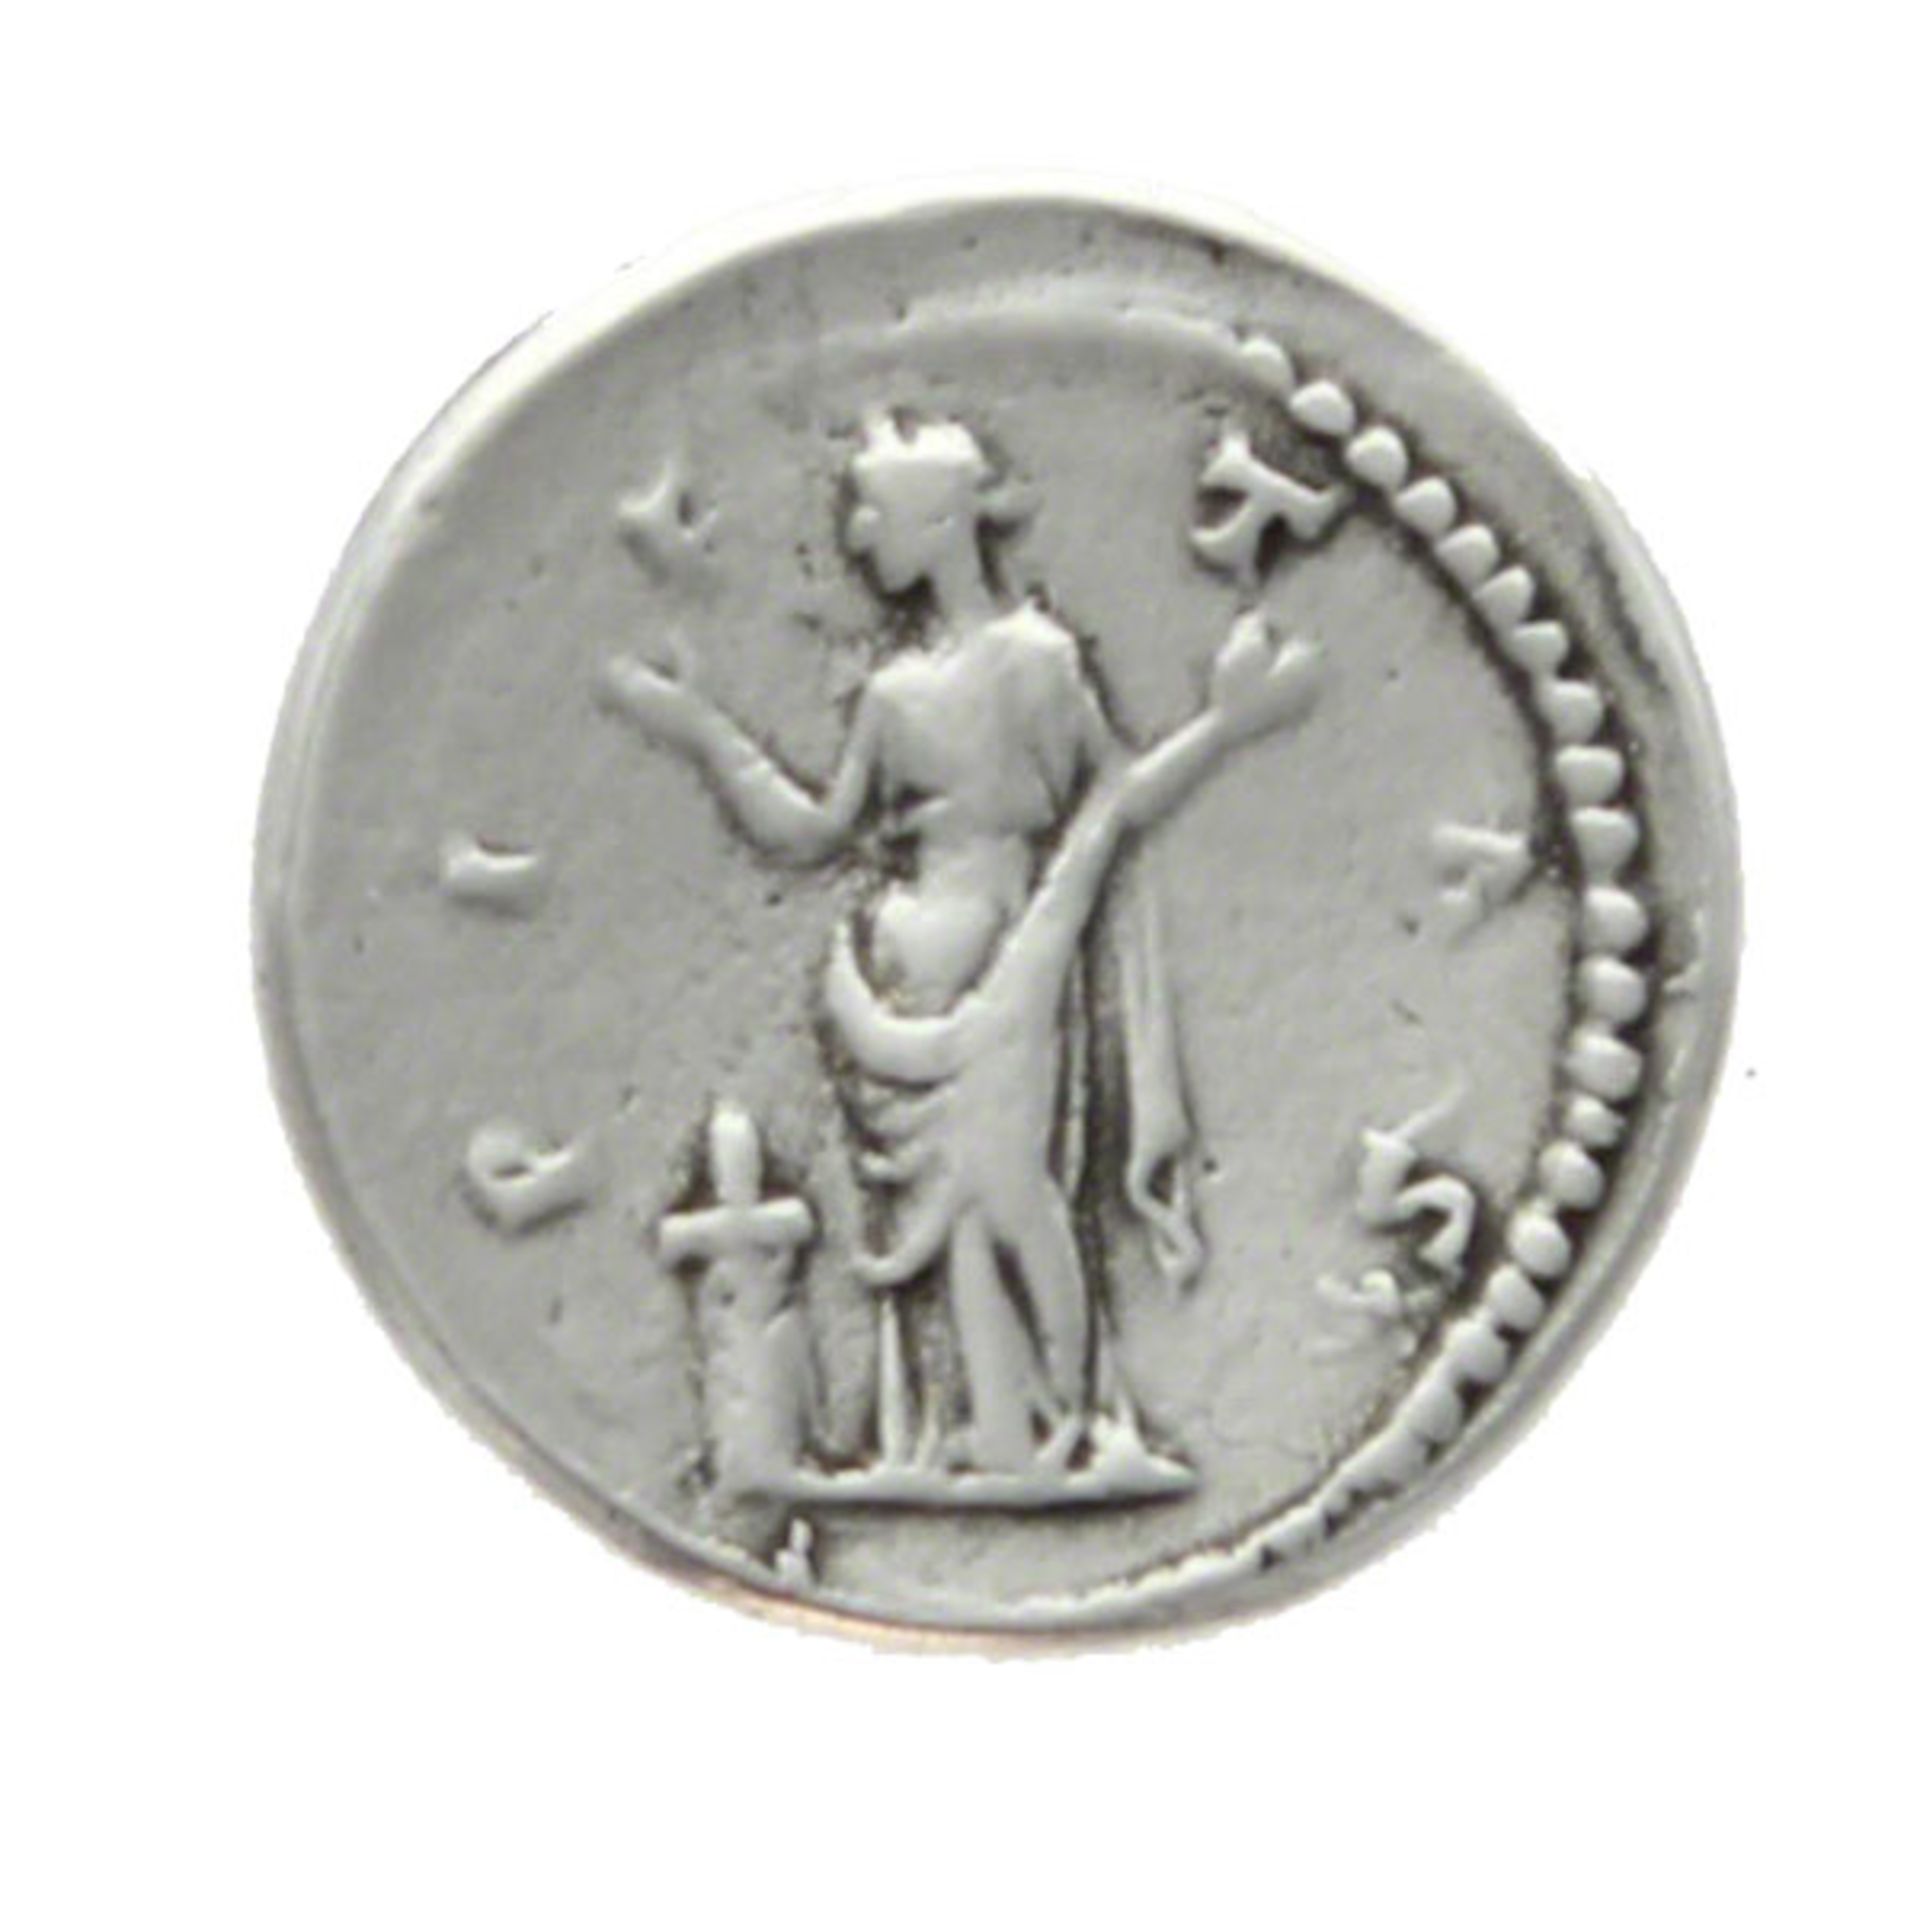 Roman Imperial "Aelius and Pietas" 137 AD Denarious Coin - Image 2 of 2